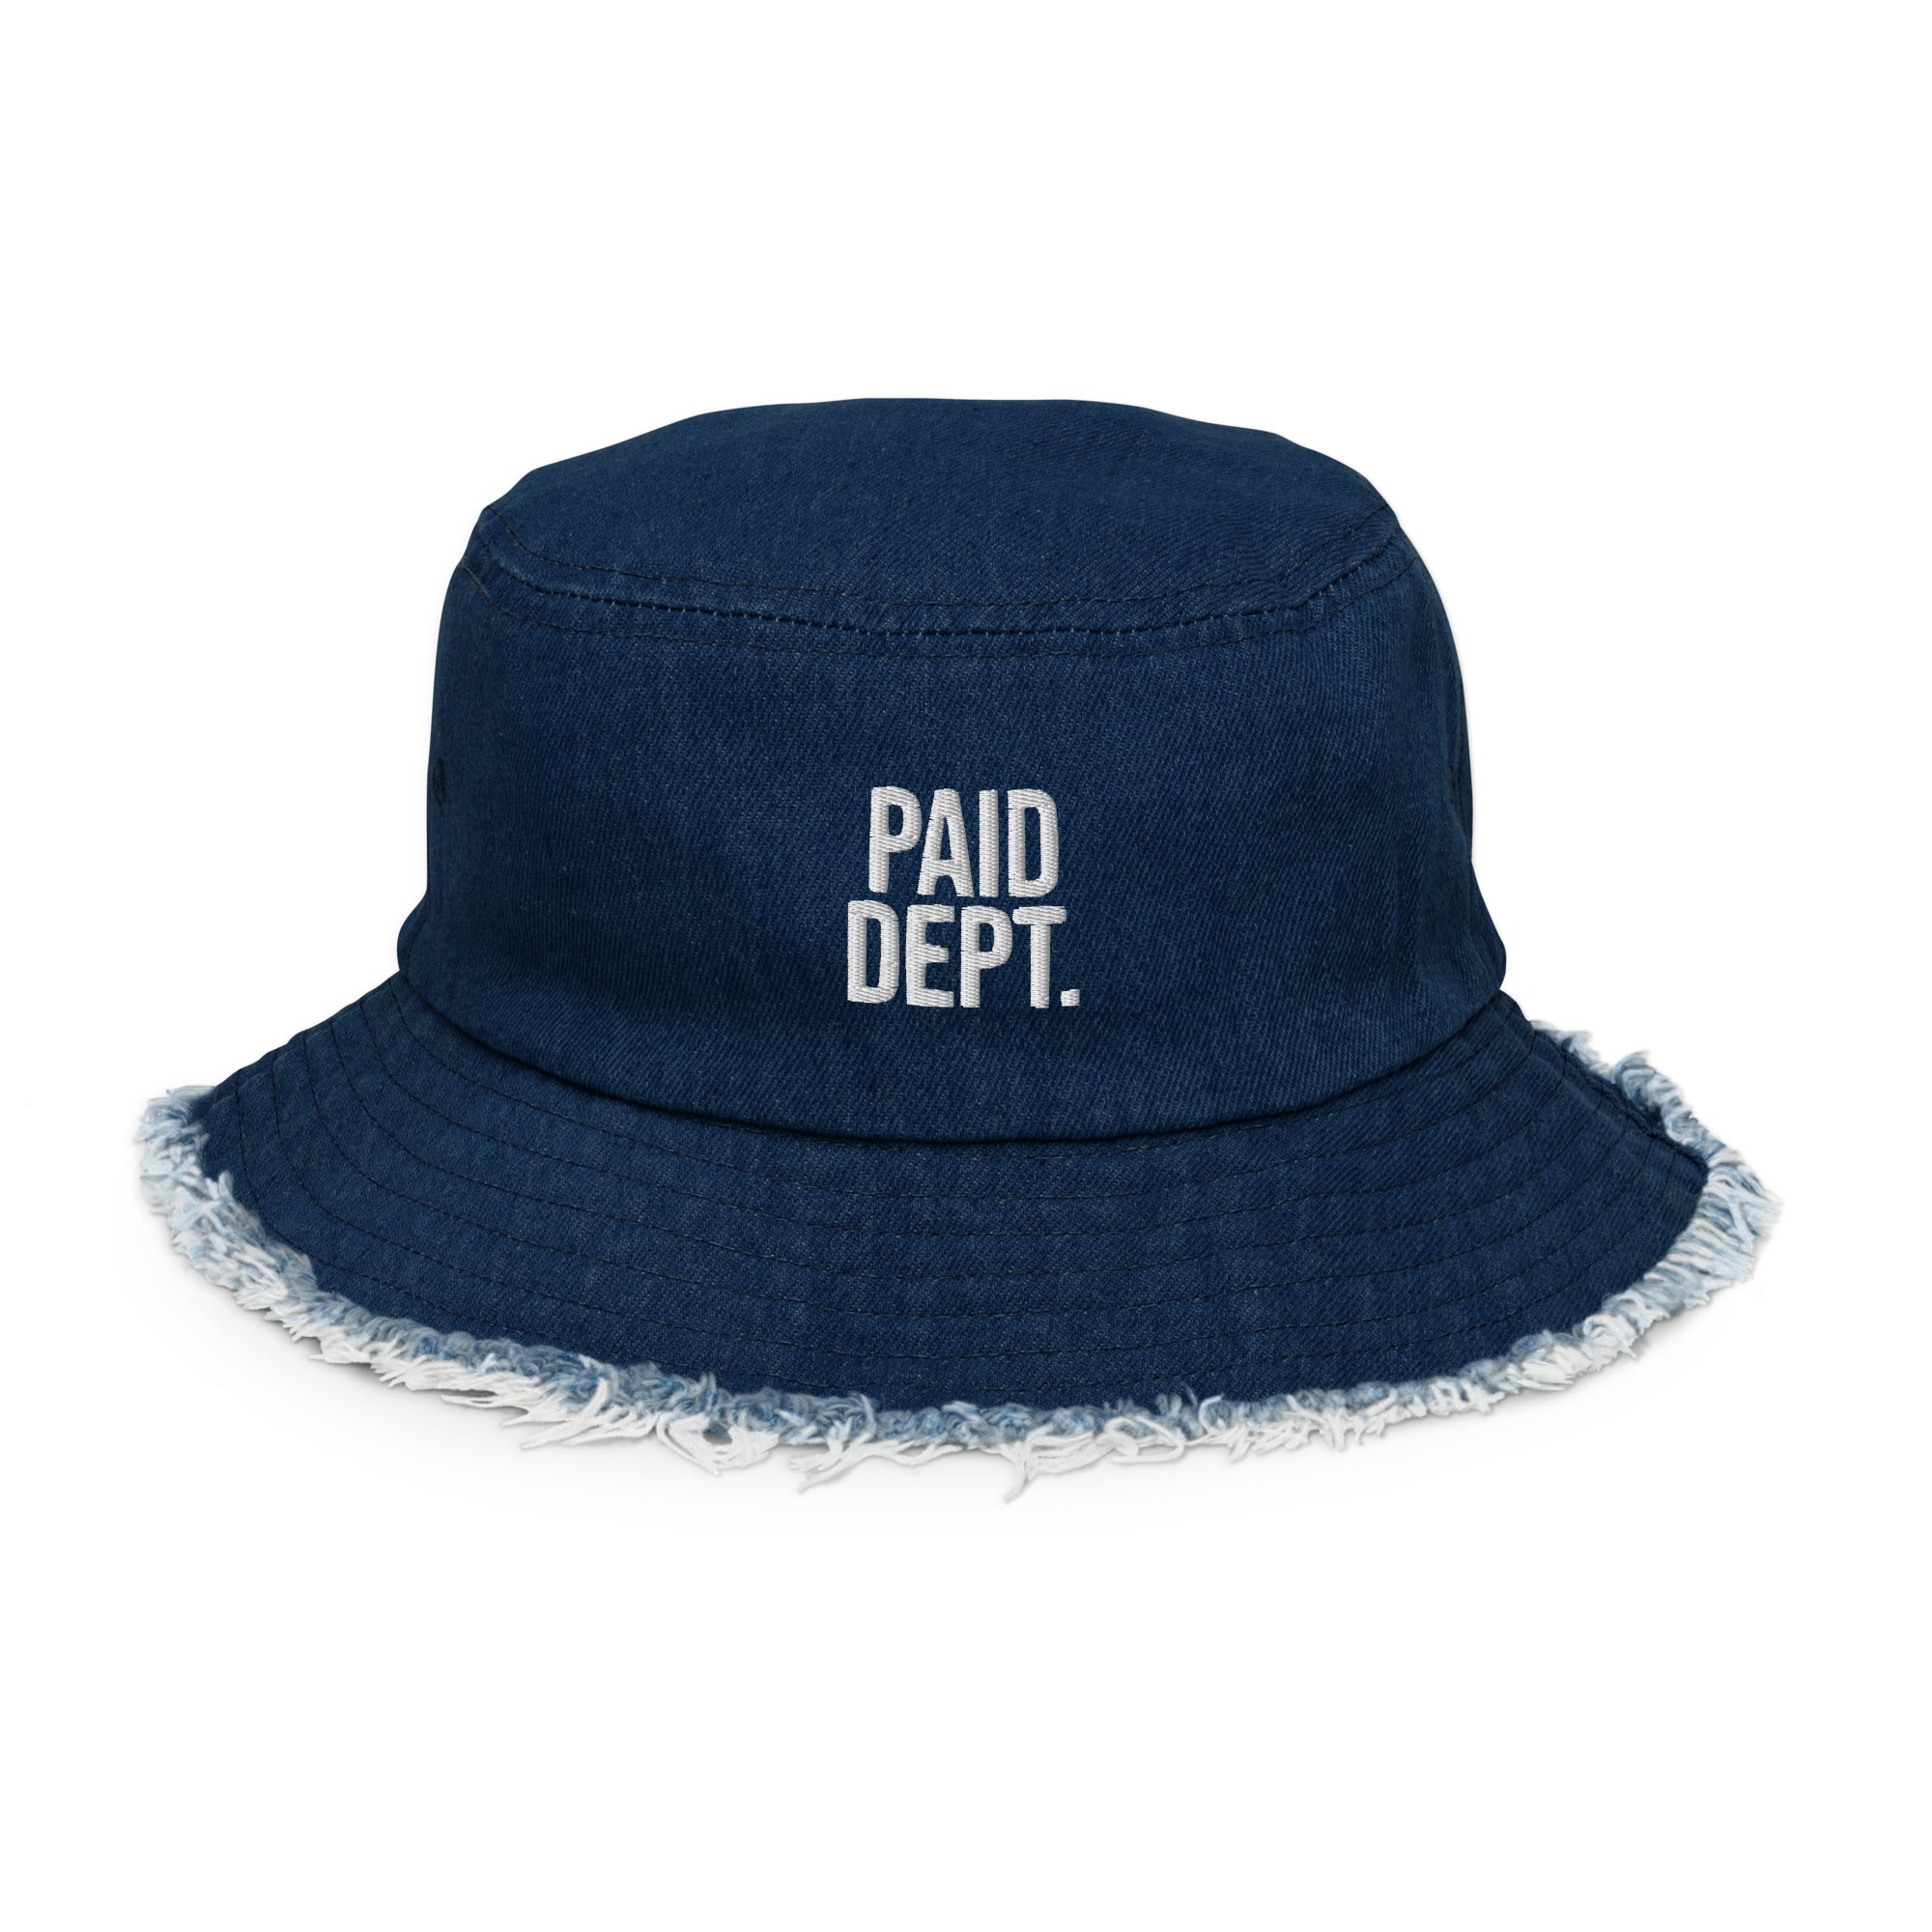 Distressed denim PAID DEPT bucket hat